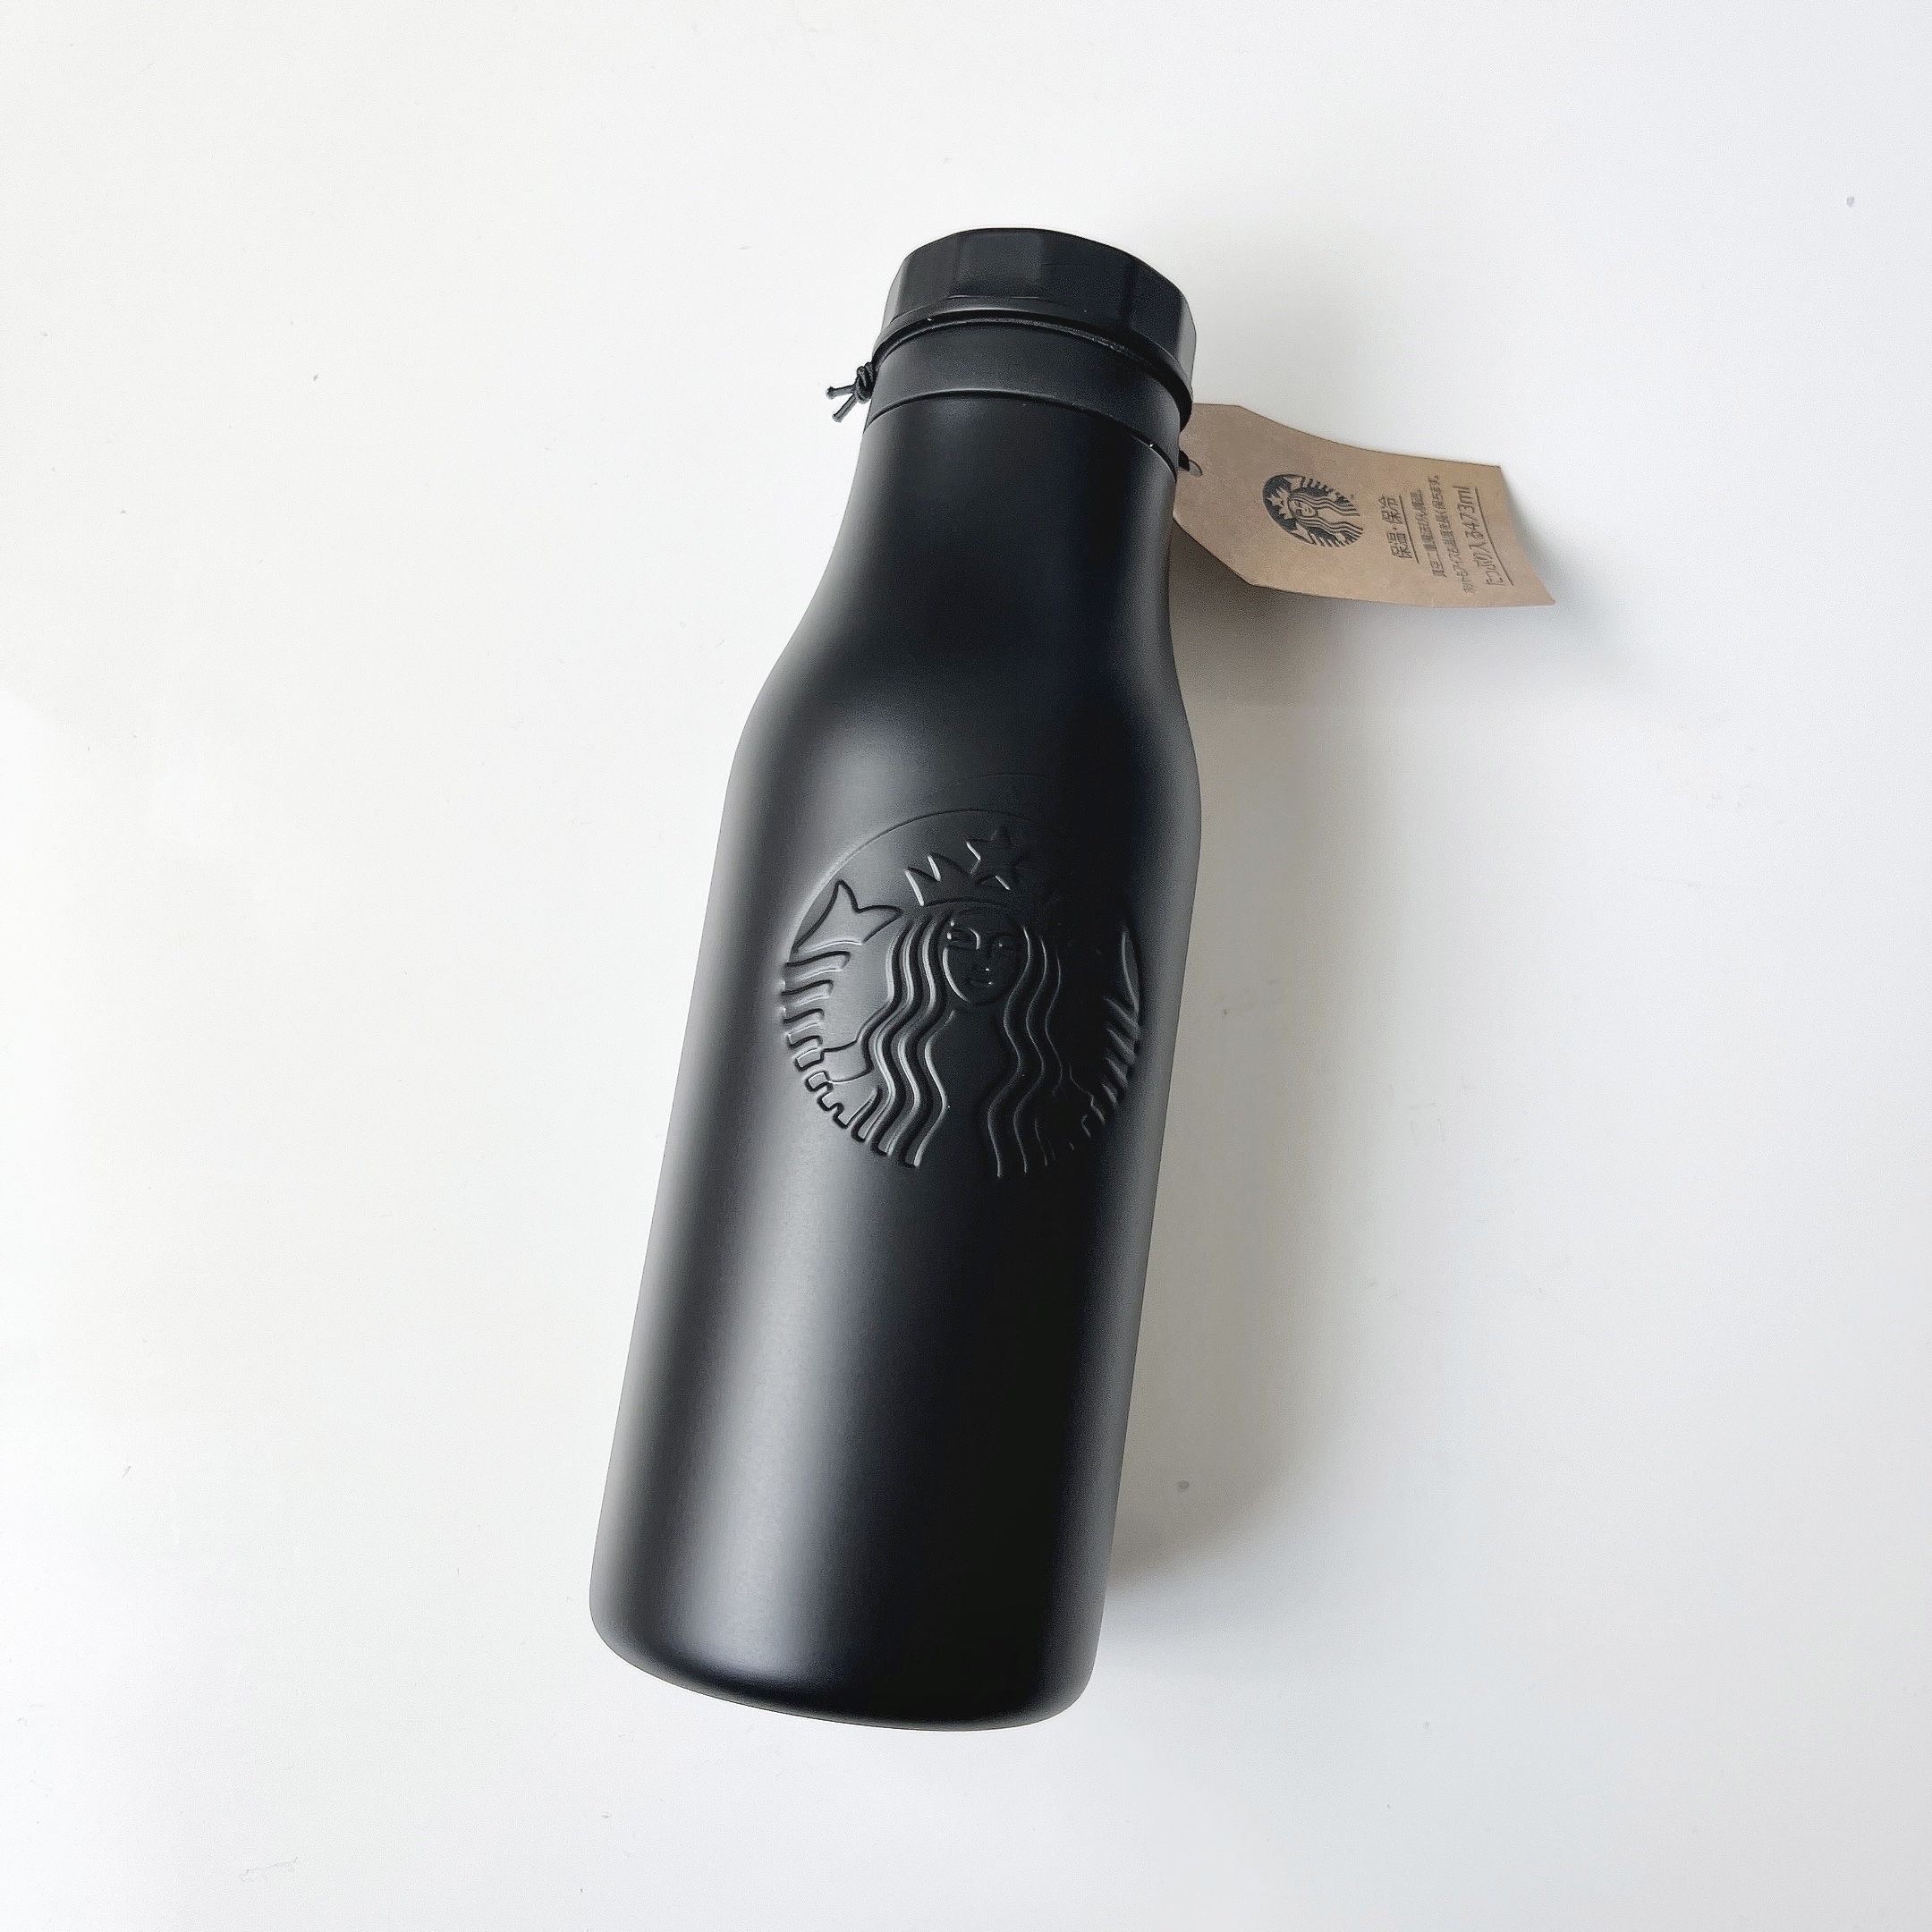 Starbucks Coffee（スターバックスコーヒー）のおすすめボトル「【名入れ専用】ステンレスロゴボトルマットブラック473ml」